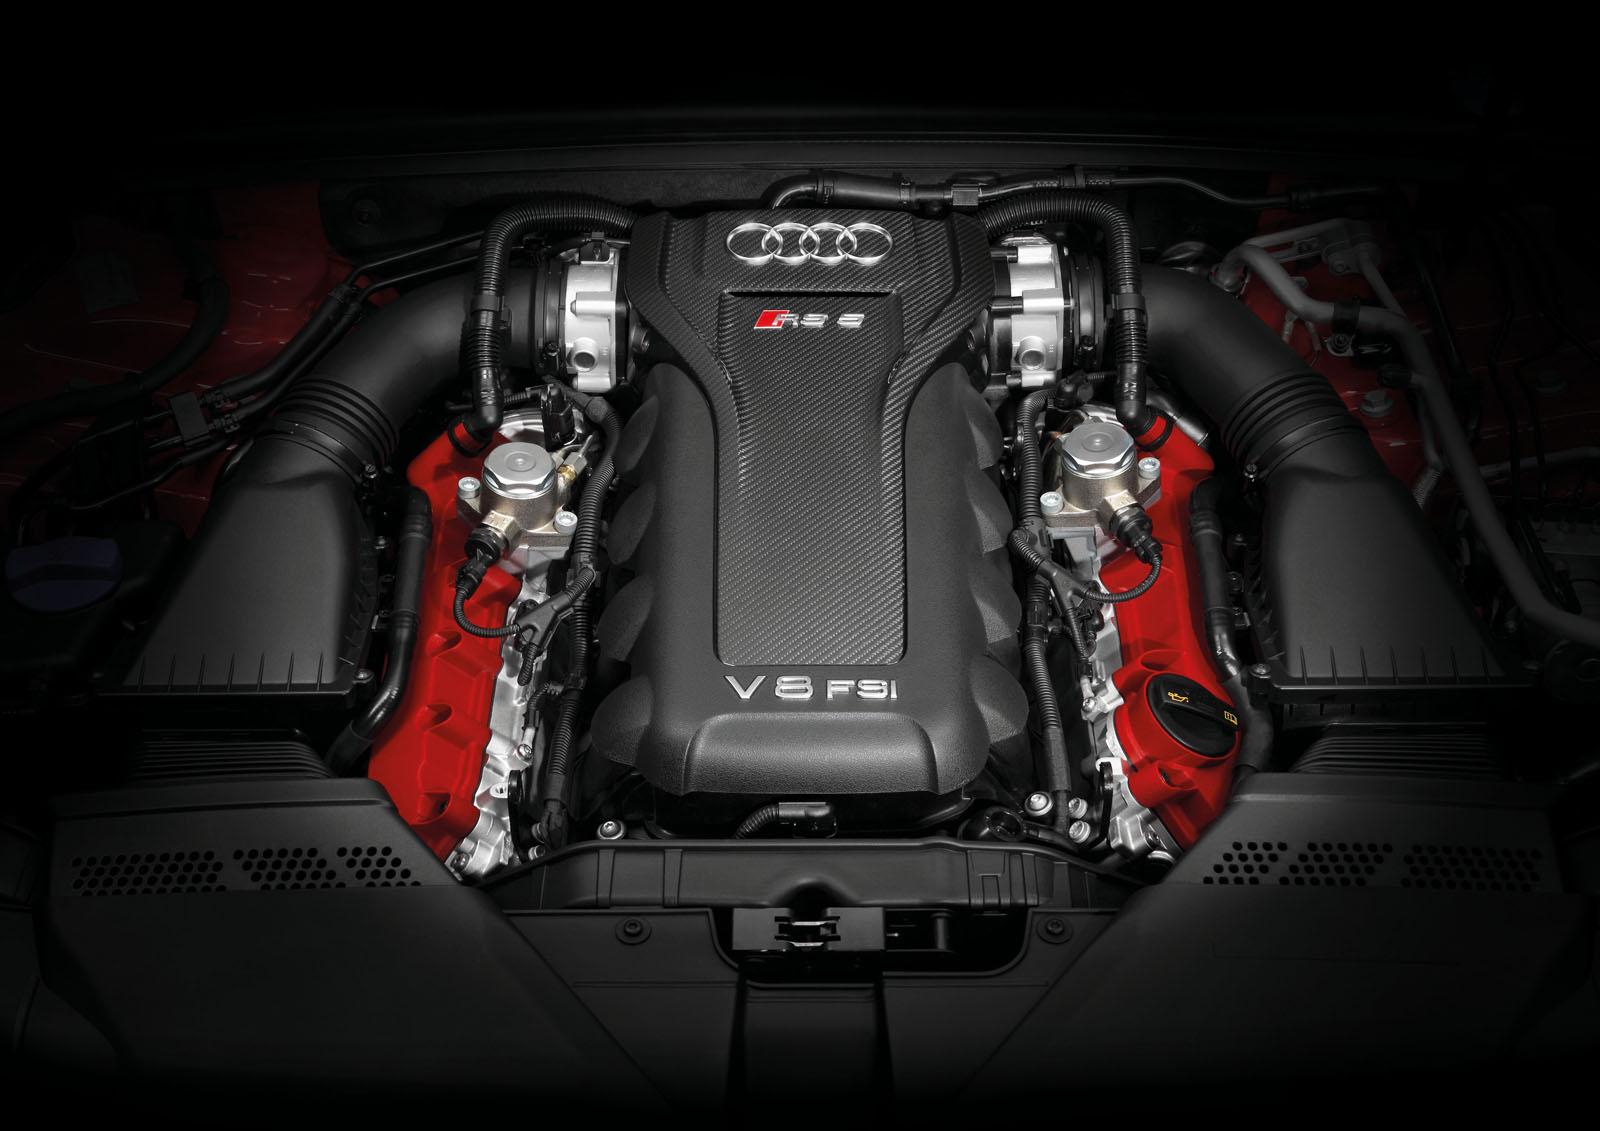 Audi RS5 Cabrio